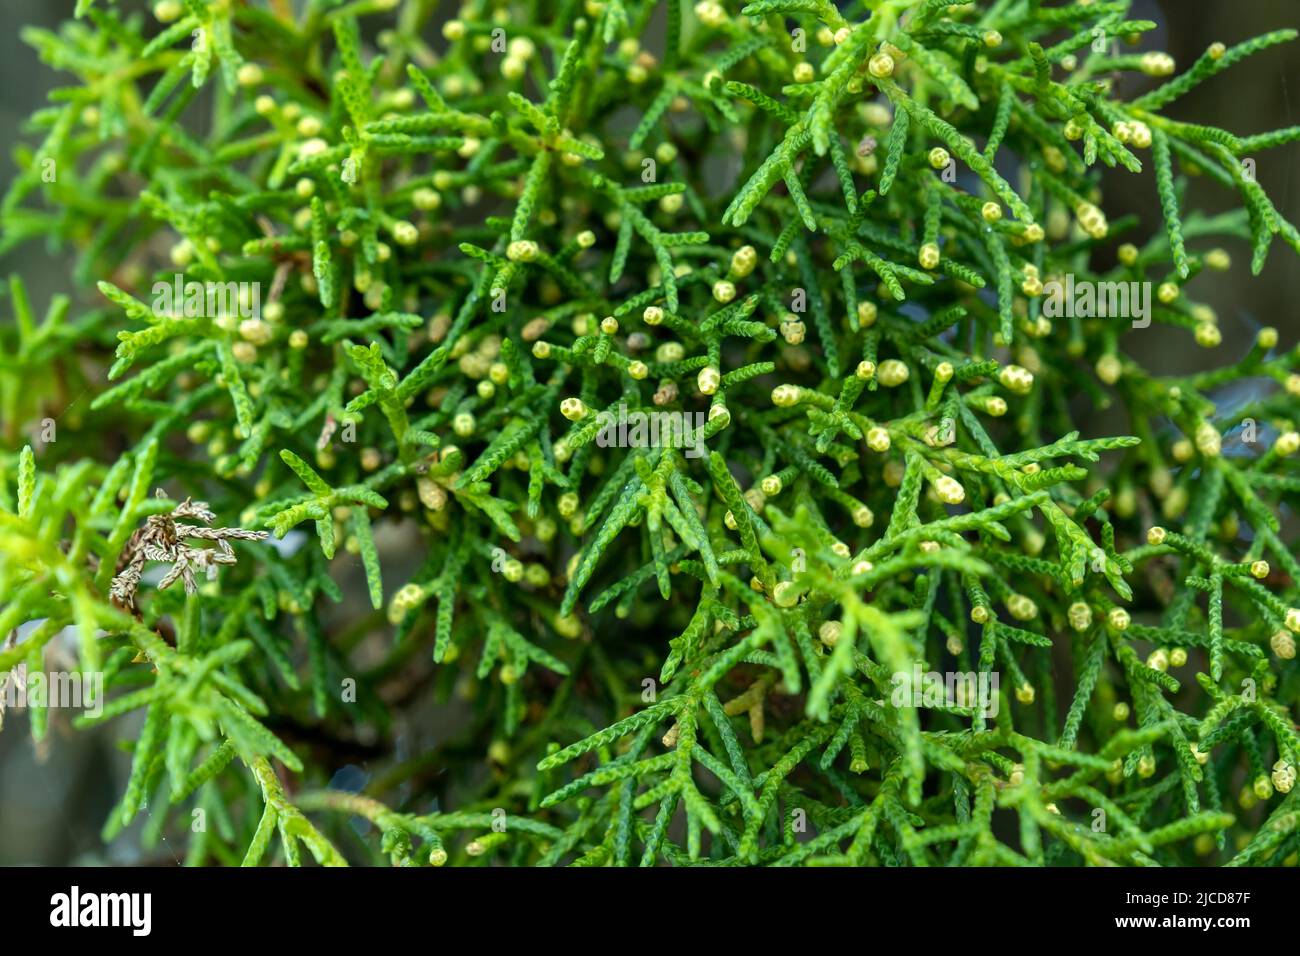 Cyprès méditerranéen (Cupressus sempervirens) feuilles et pousses vertes de conifères Banque D'Images